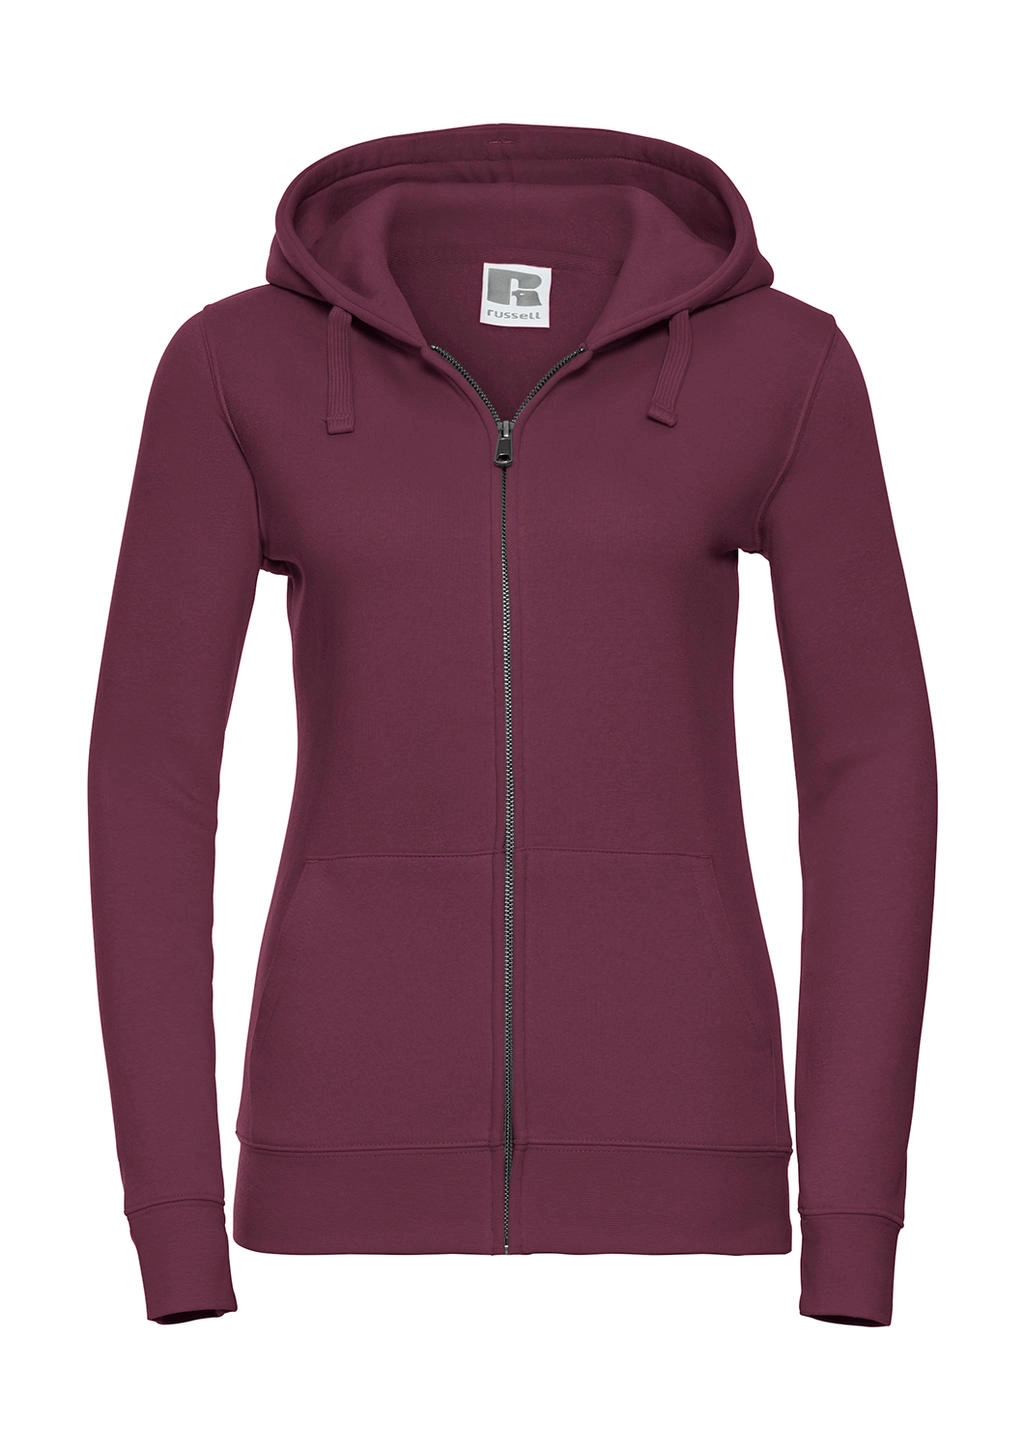 Ladies` Authentic Zipped Hood zum Besticken und Bedrucken in der Farbe Burgundy mit Ihren Logo, Schriftzug oder Motiv.